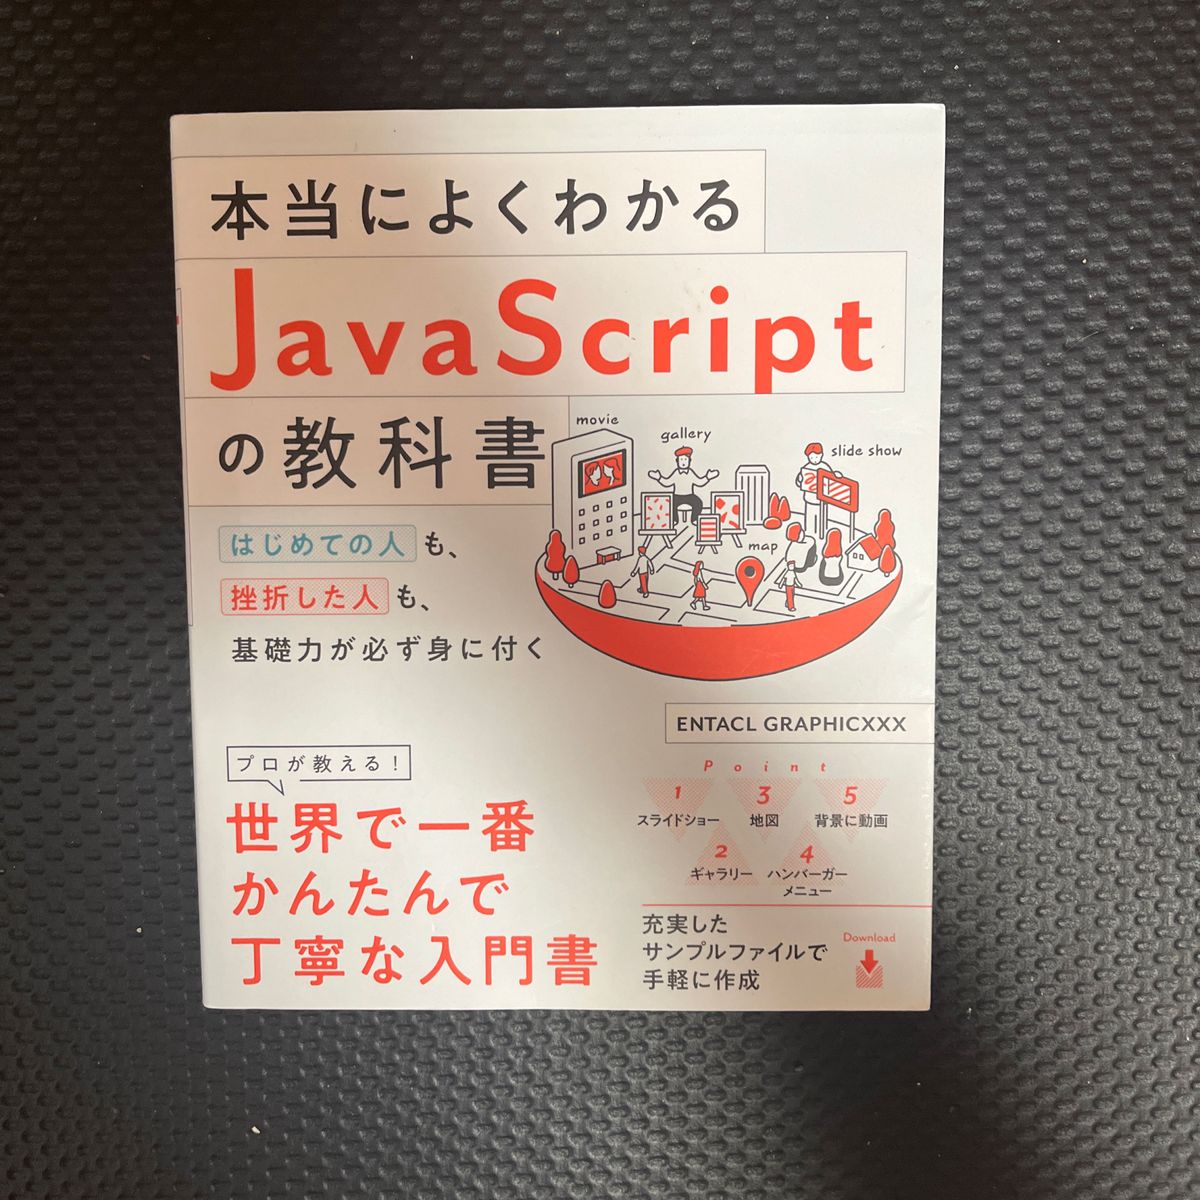 本当によくわかるJavaScriptの教科書 〜 世界で一番かんたんで丁寧な入門書